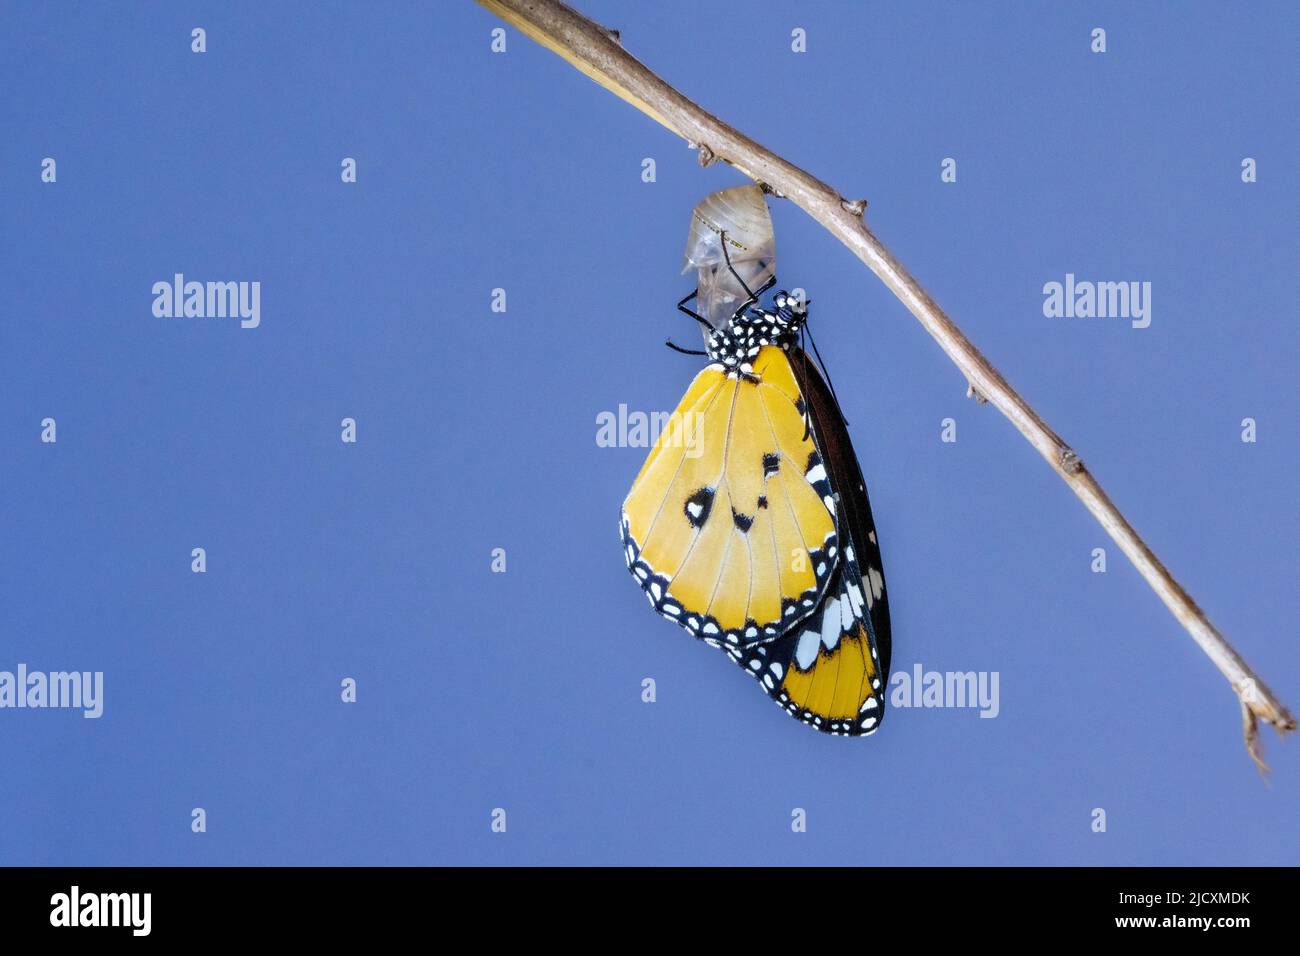 Schmetterling (Danaus chrysippus), Afrikanischer Monarch oder gewöhnlicher Tiger-Schmetterling, der aus seinem Kokon hervortritt. Dieser Schmetterling kommt in Afrika, Indien, Süd-Eas vor Stockfoto